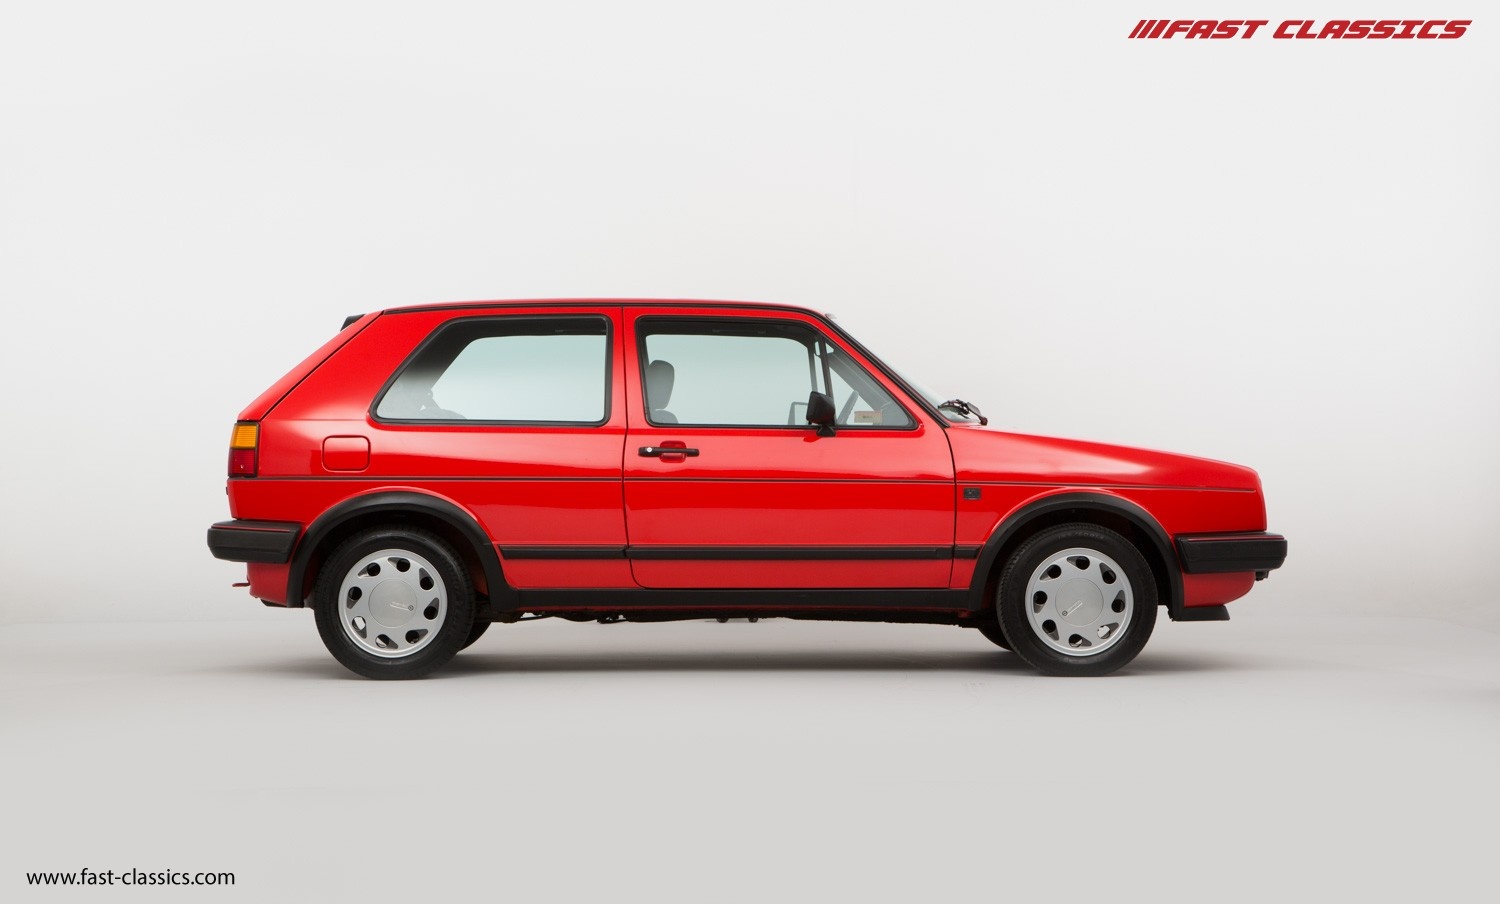 Volkswagen Golf 1985 classicdriver com fast-classics com  img_6897-edit_0